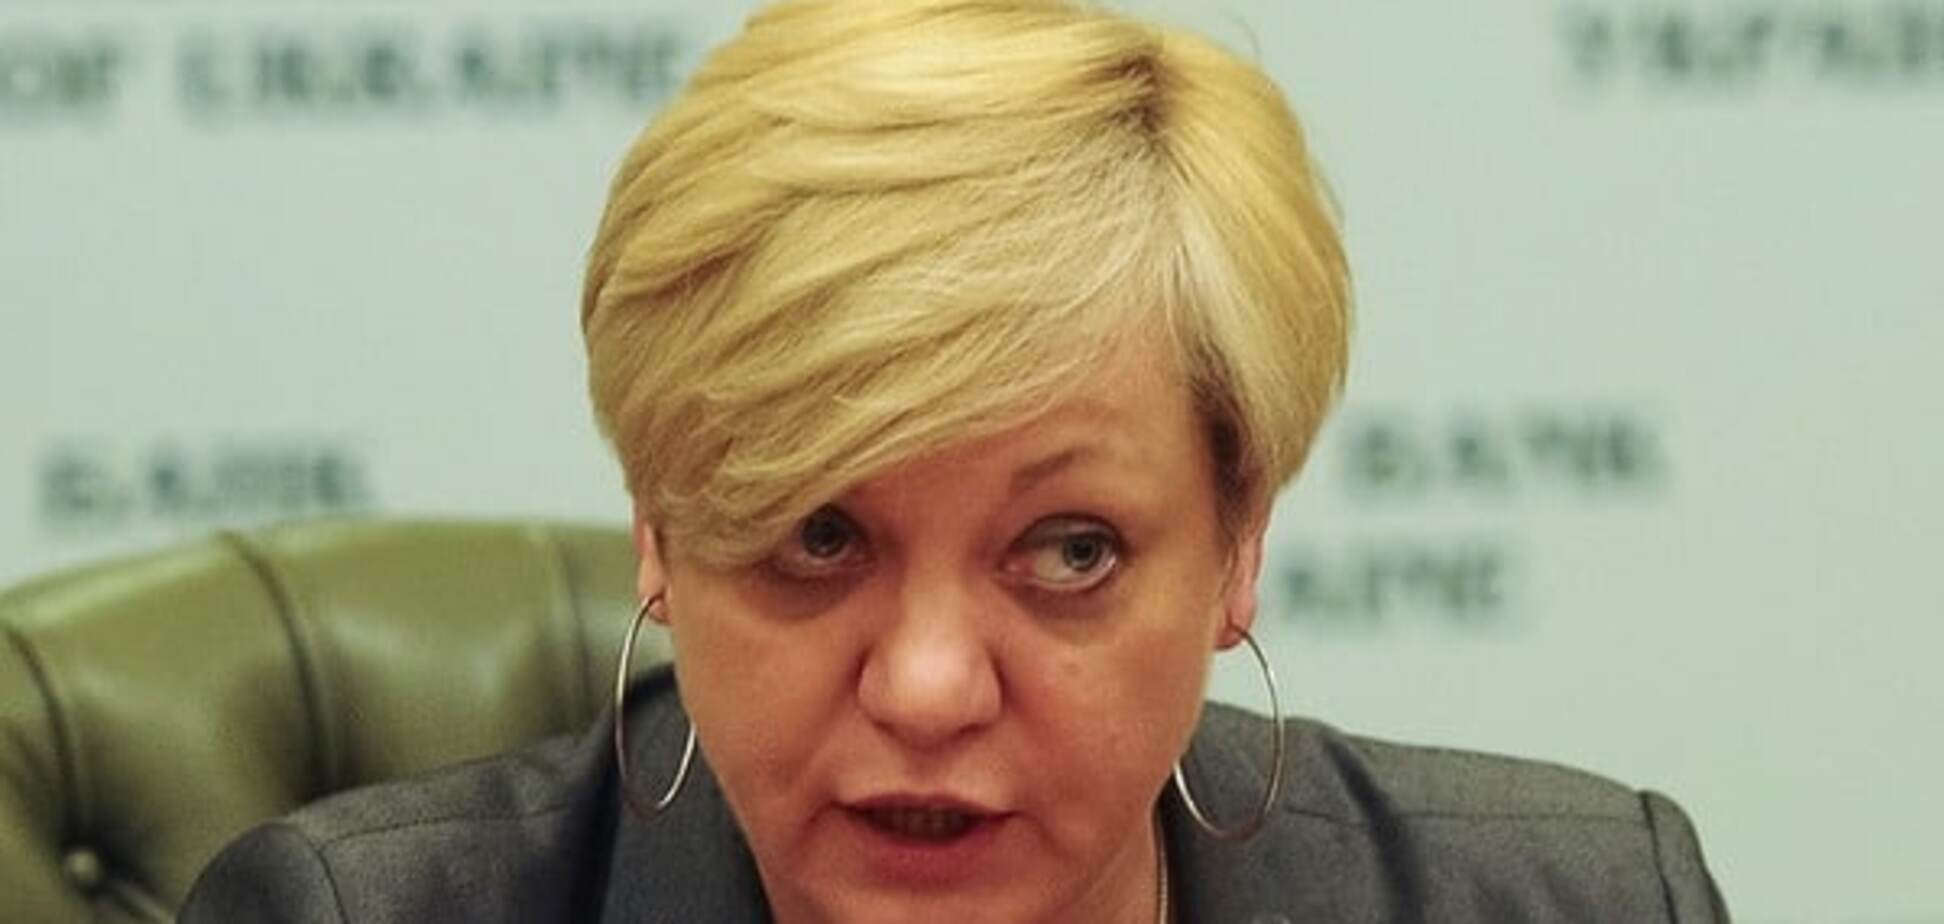 Расслабляться рано: Гонтарева предупредила о закрытии малых банков в Украине